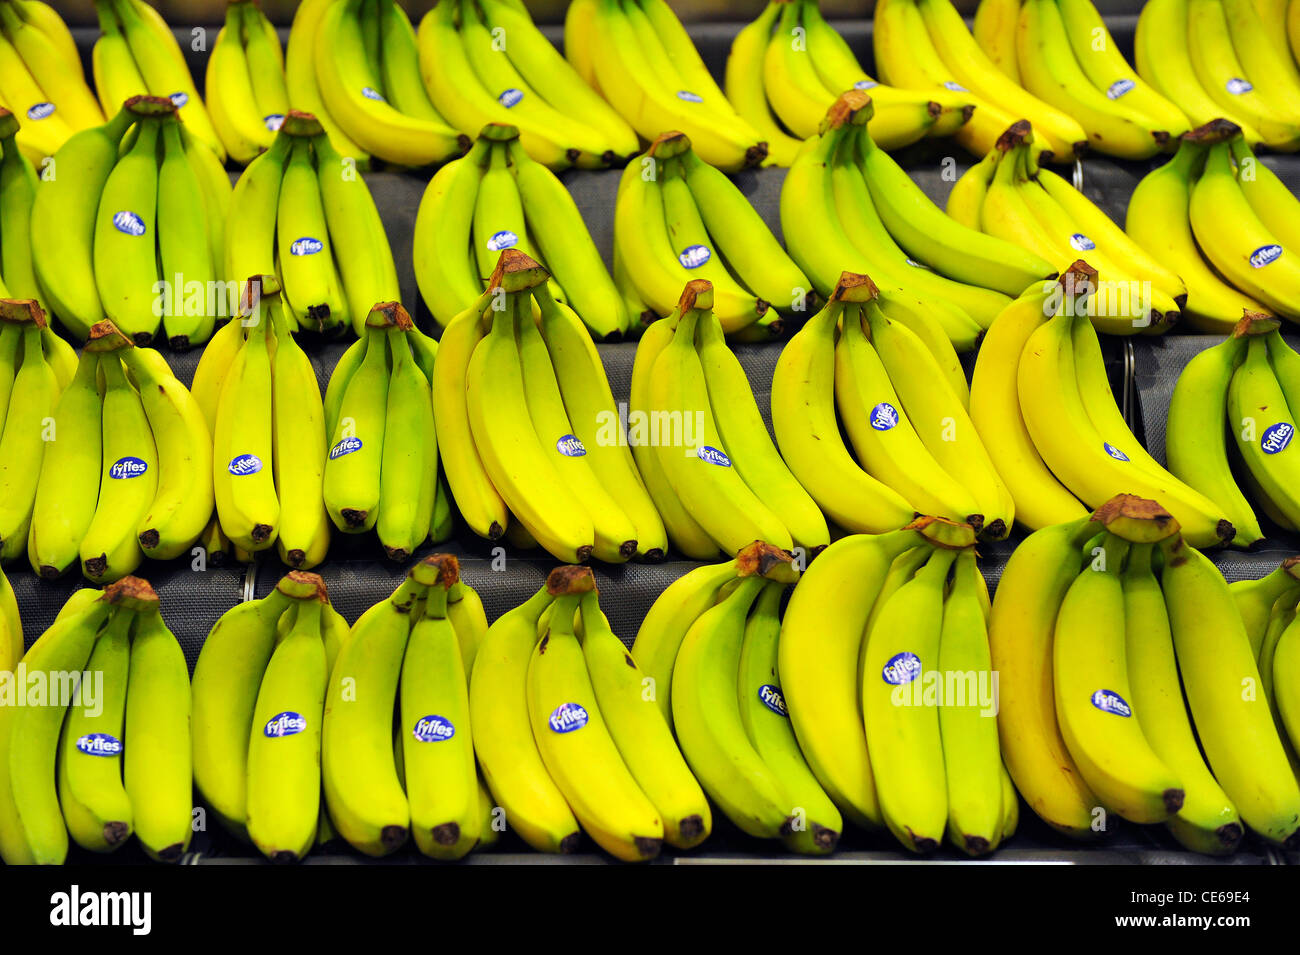 Nahaufnahme der gelbe Bananen auf dem Display in einem Supermarkt. Stockfoto